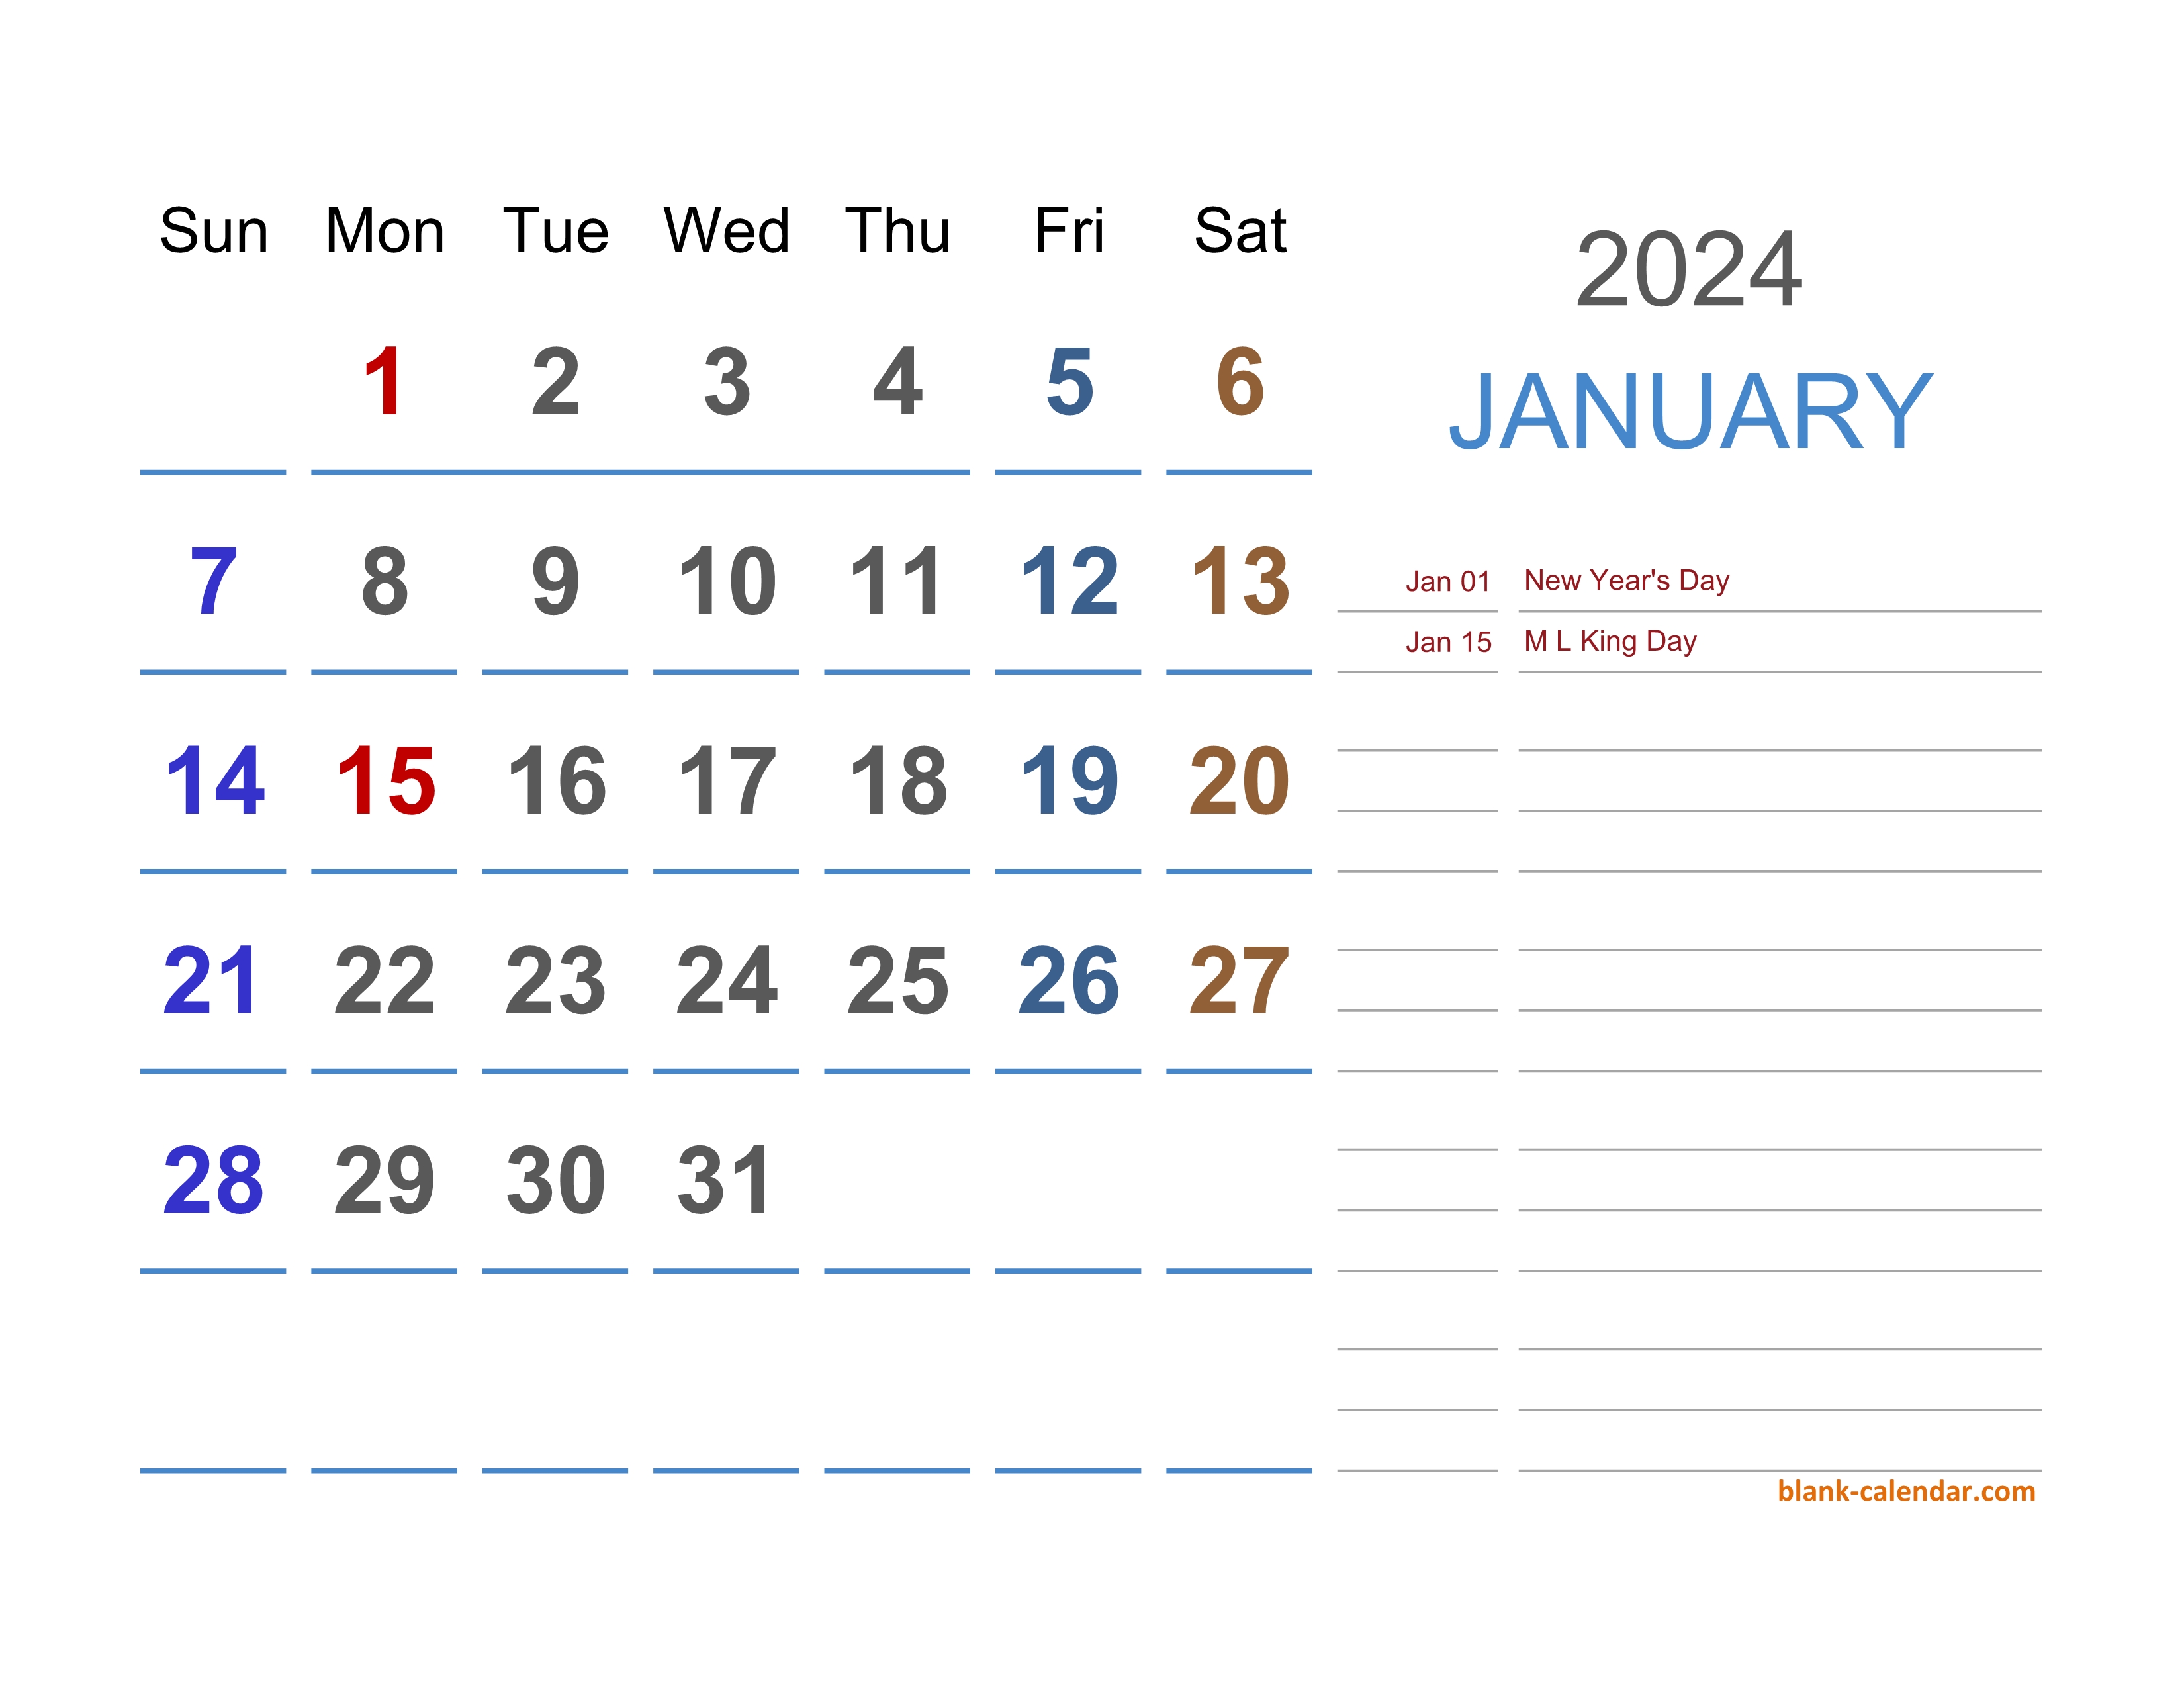 Календарь на 2024 часы работы. Календарь на 2024 год. Календарь календарь 2024. Календарь 2024 эксель. Календарь март 2024.